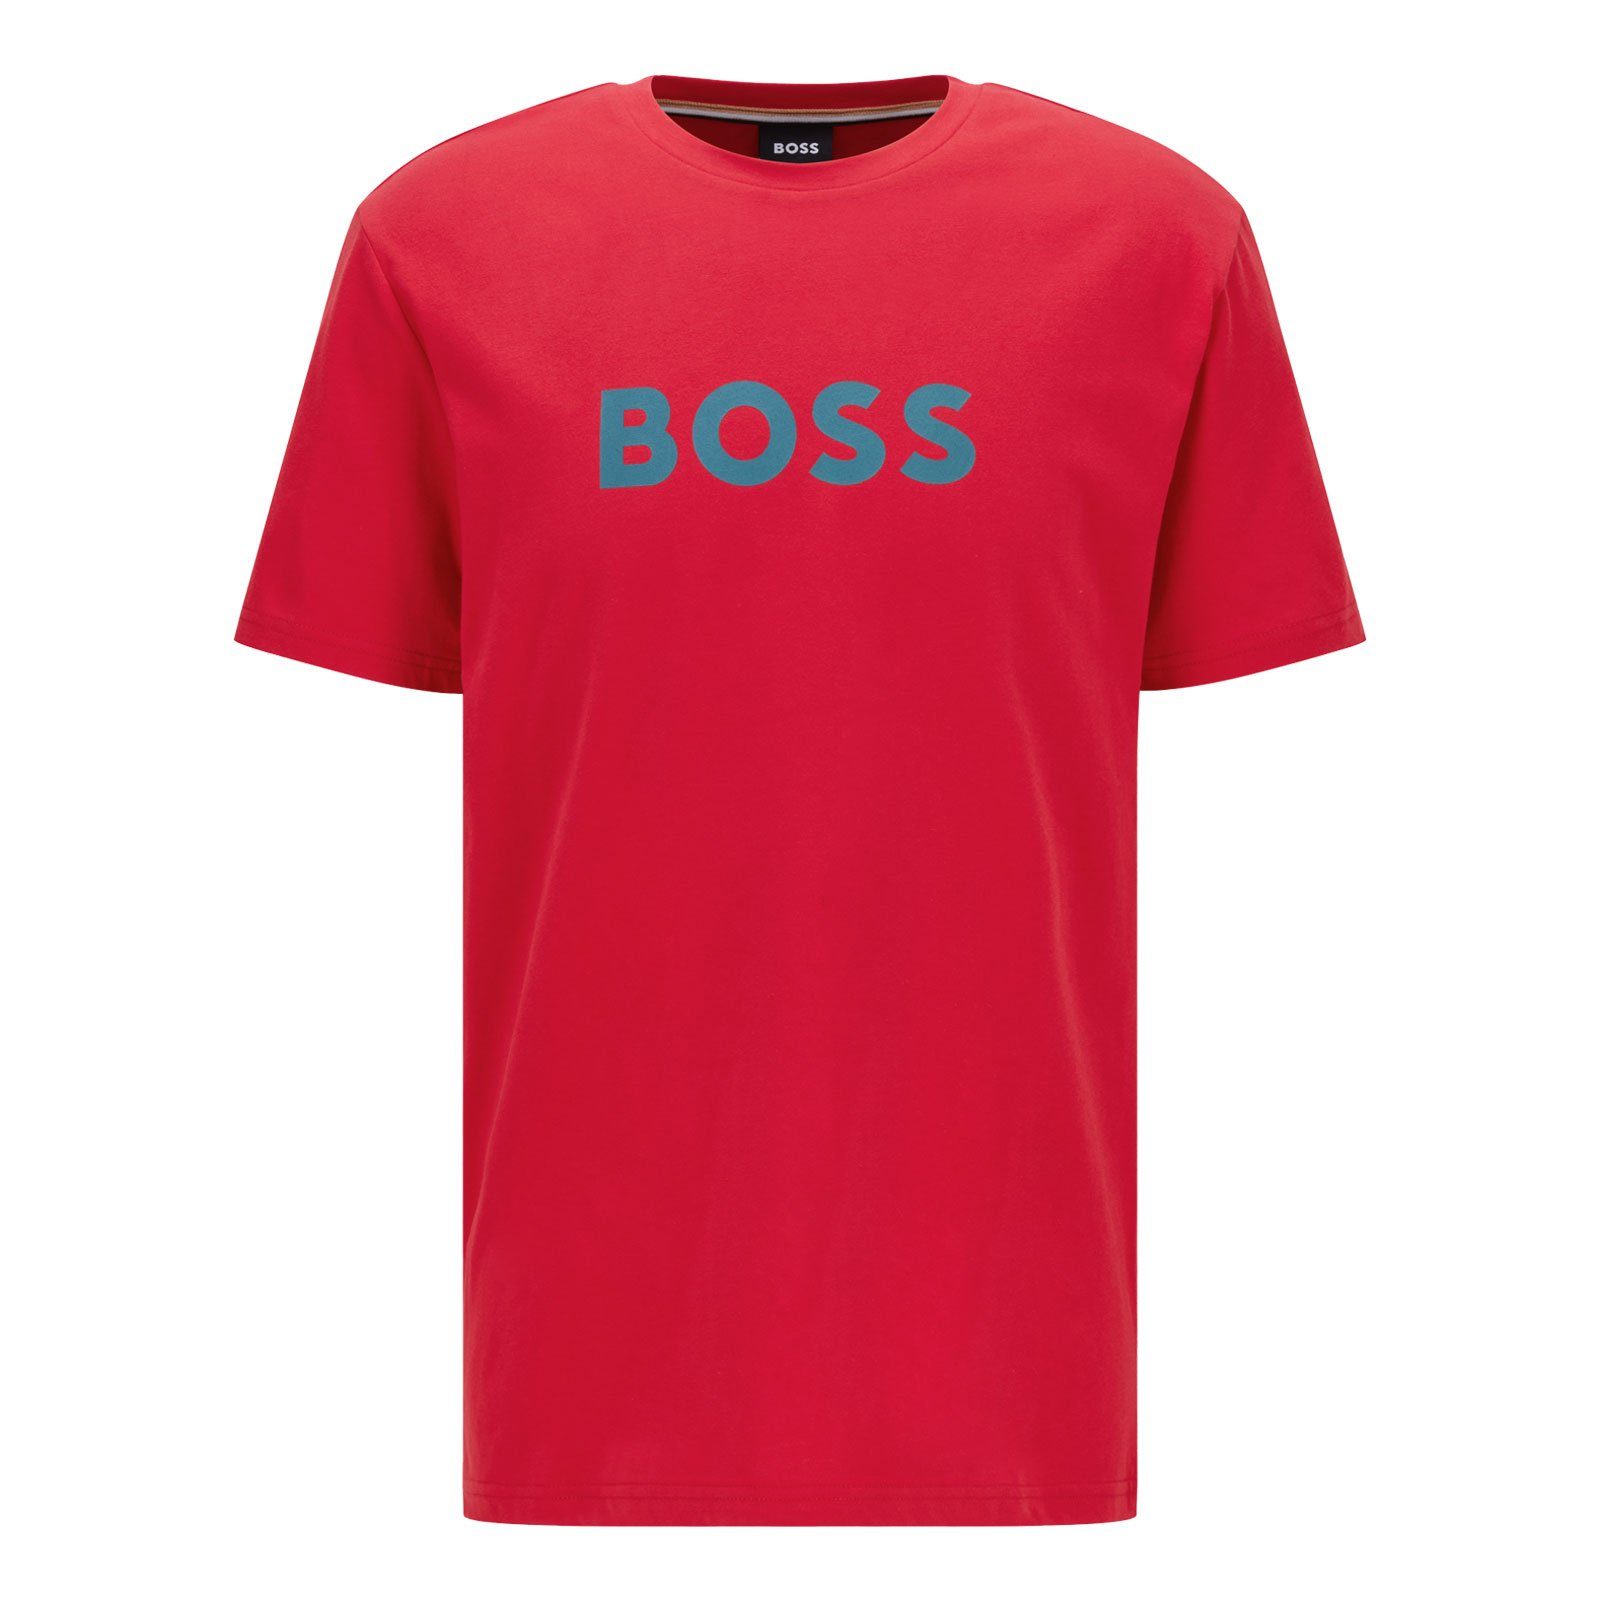 BOSS T-Shirt RN Sun Protection mit großem Markenprint auf der Brust 629 bright red